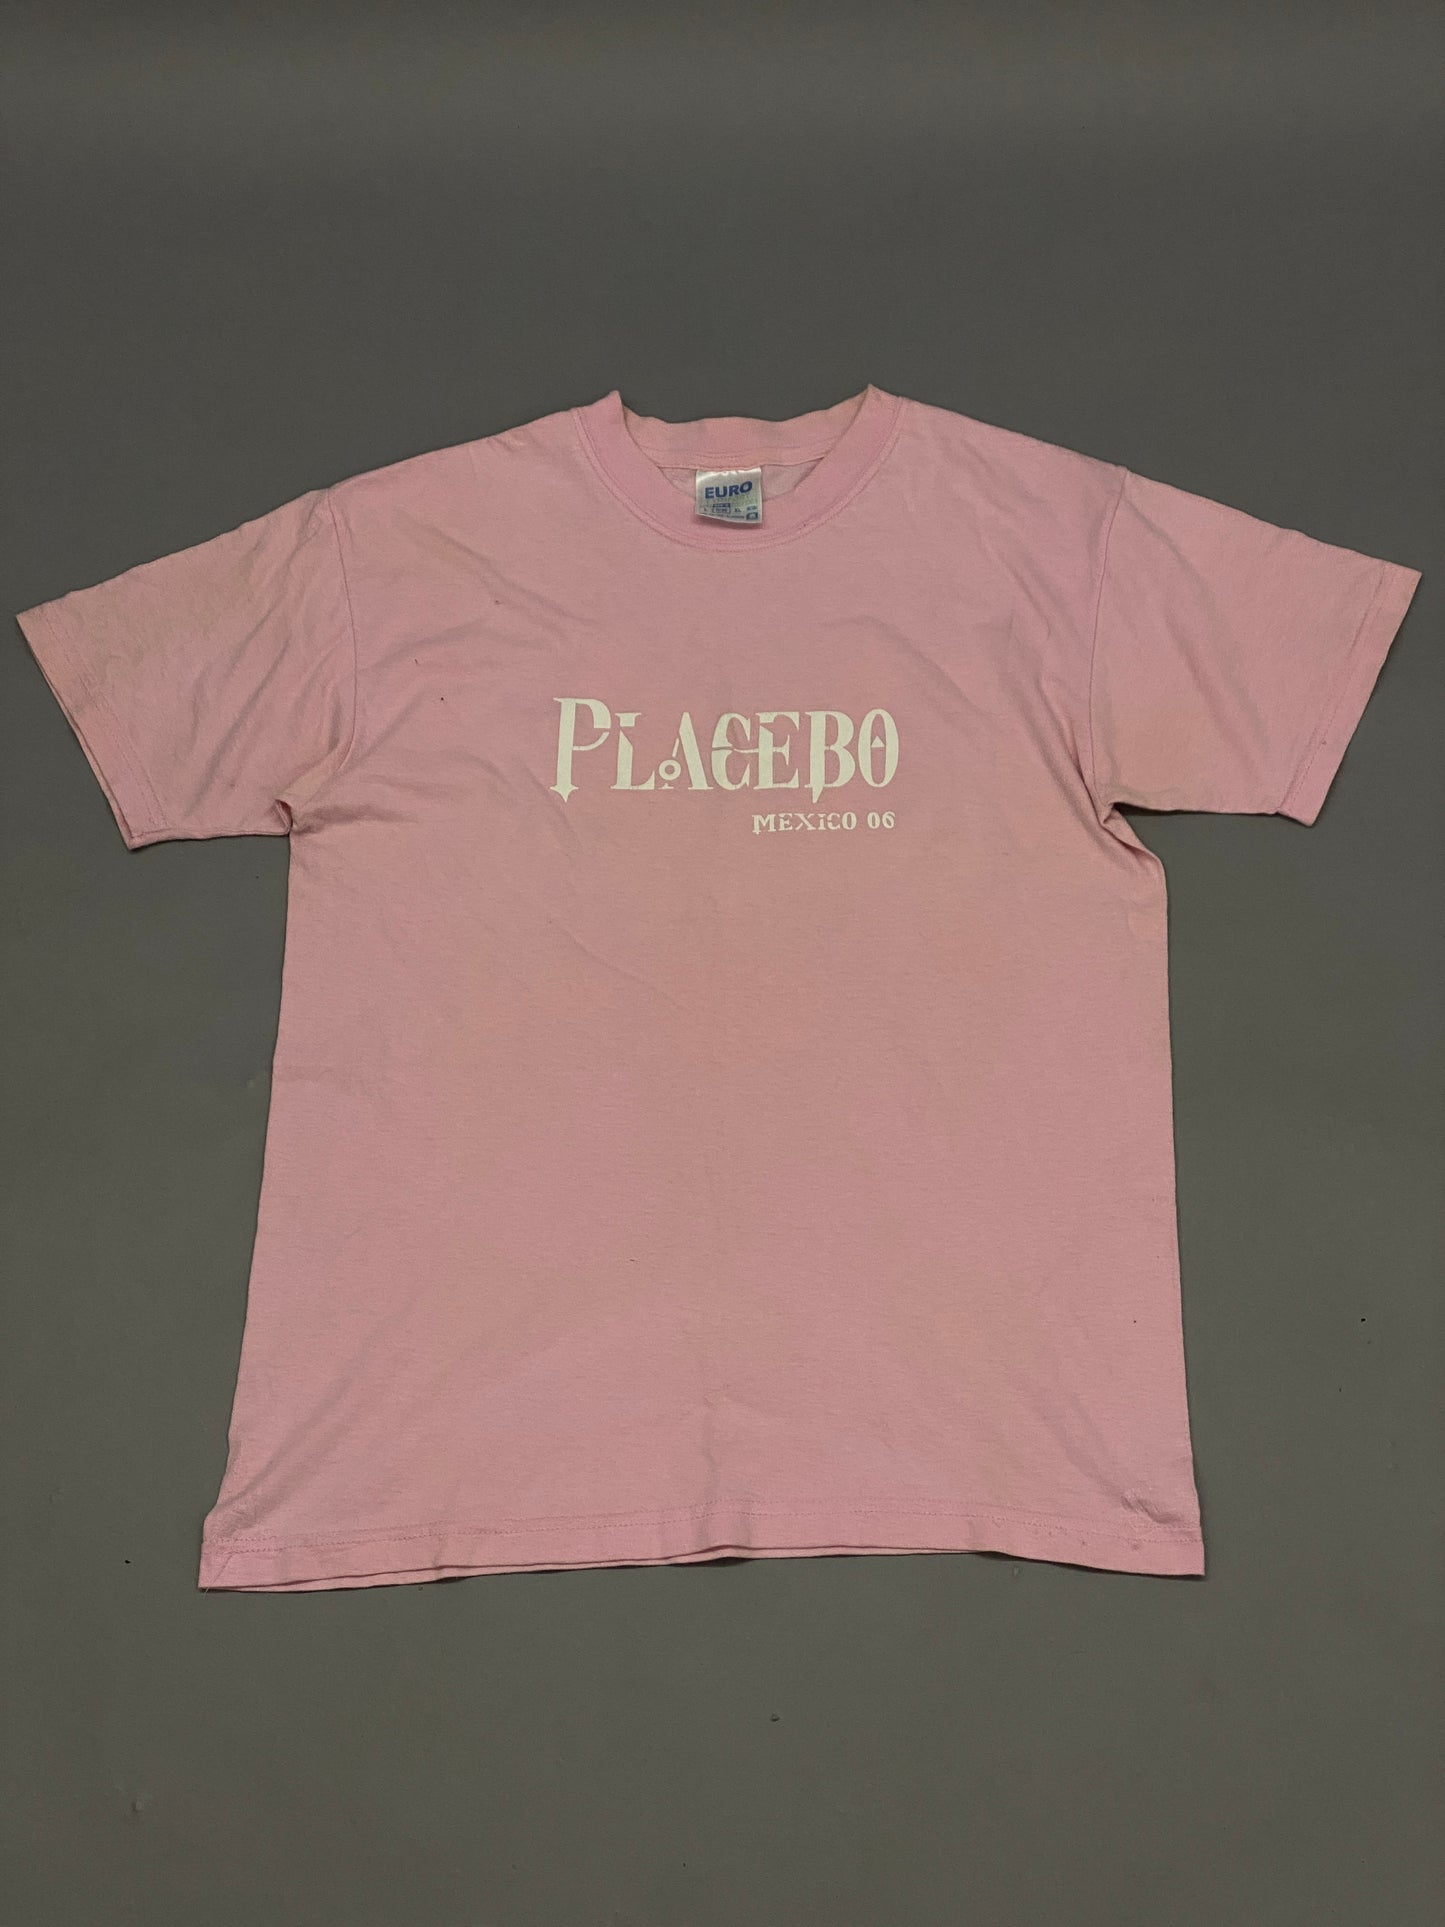 Playera Placebo Mexico Tour 2006 Vintage